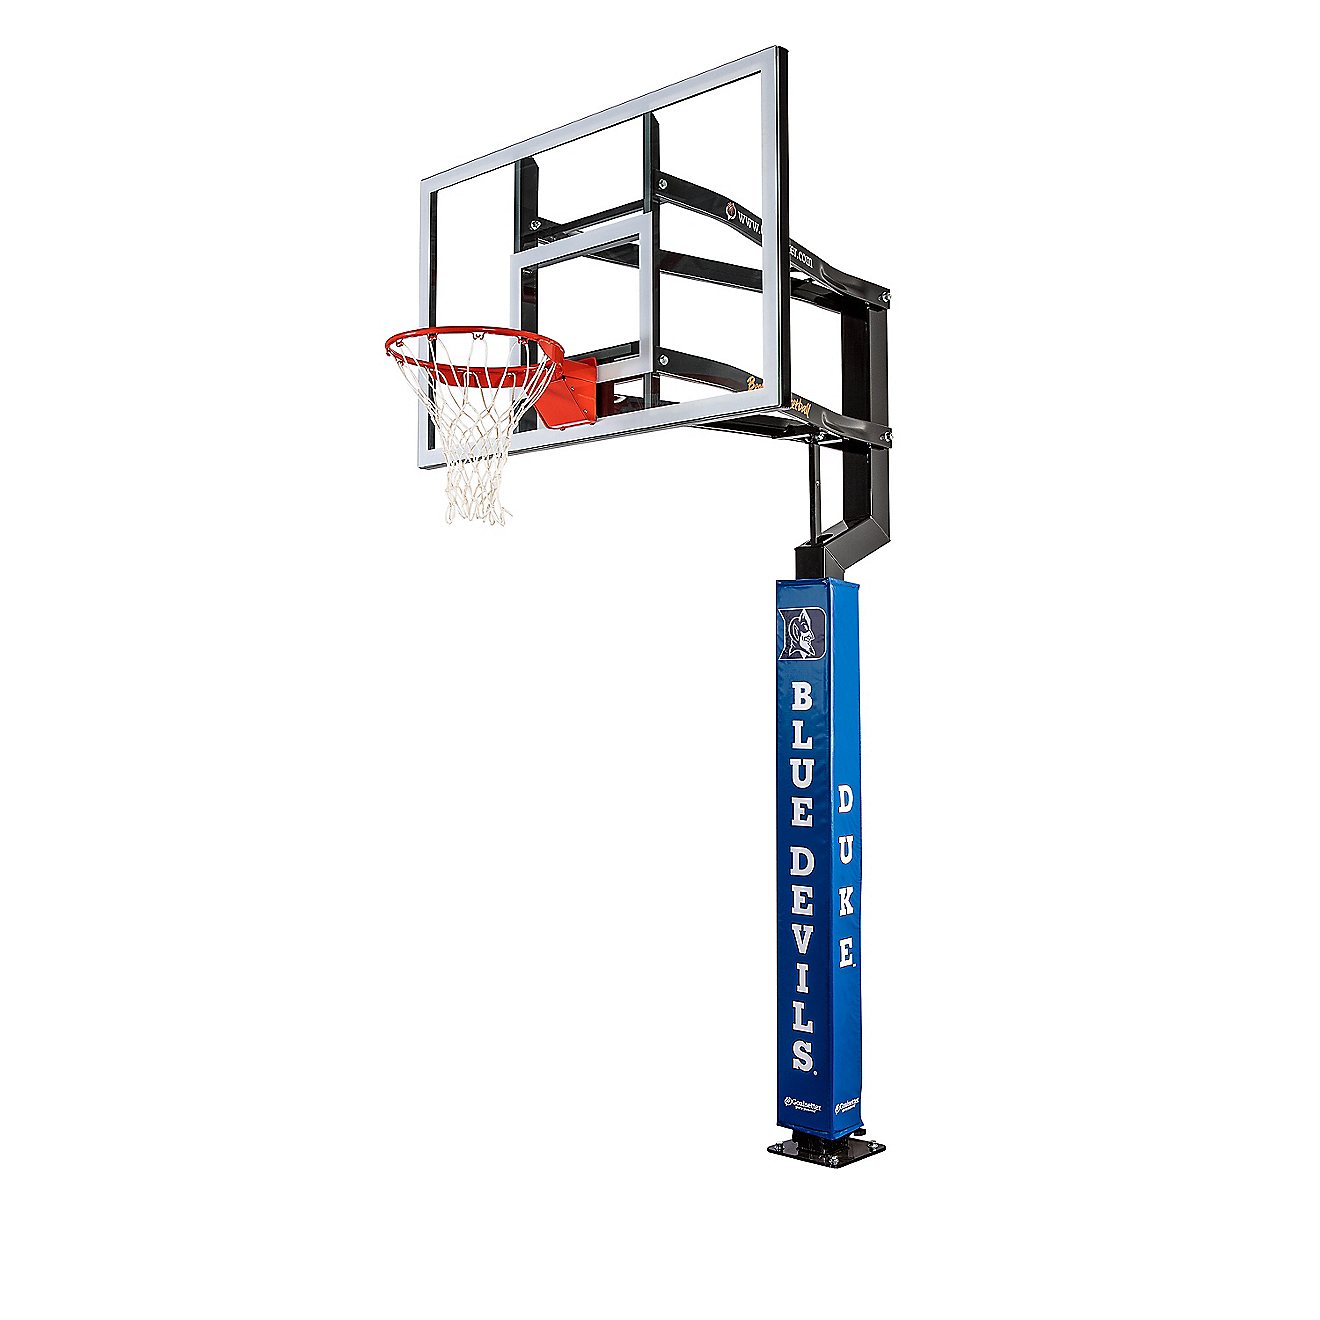 Goalsetter Duke University Wraparound Basketball Pole Pad                                                                        - view number 2